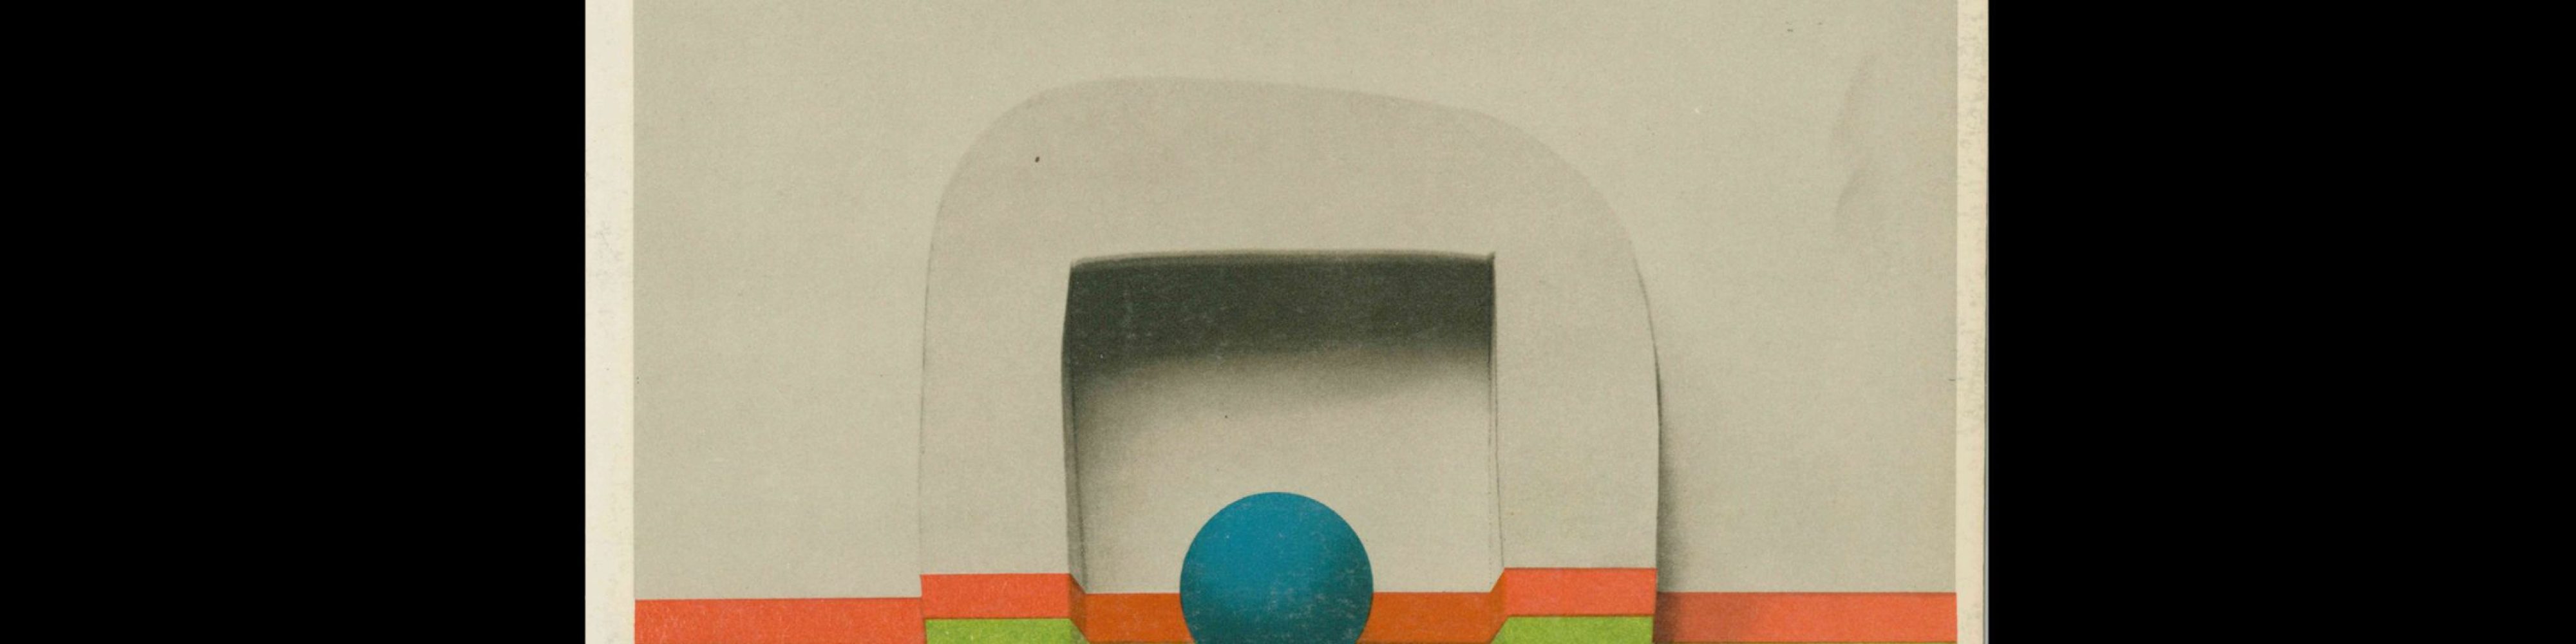 Projekt 86, 3, 1972. Cover design by Jósef Mroszczak